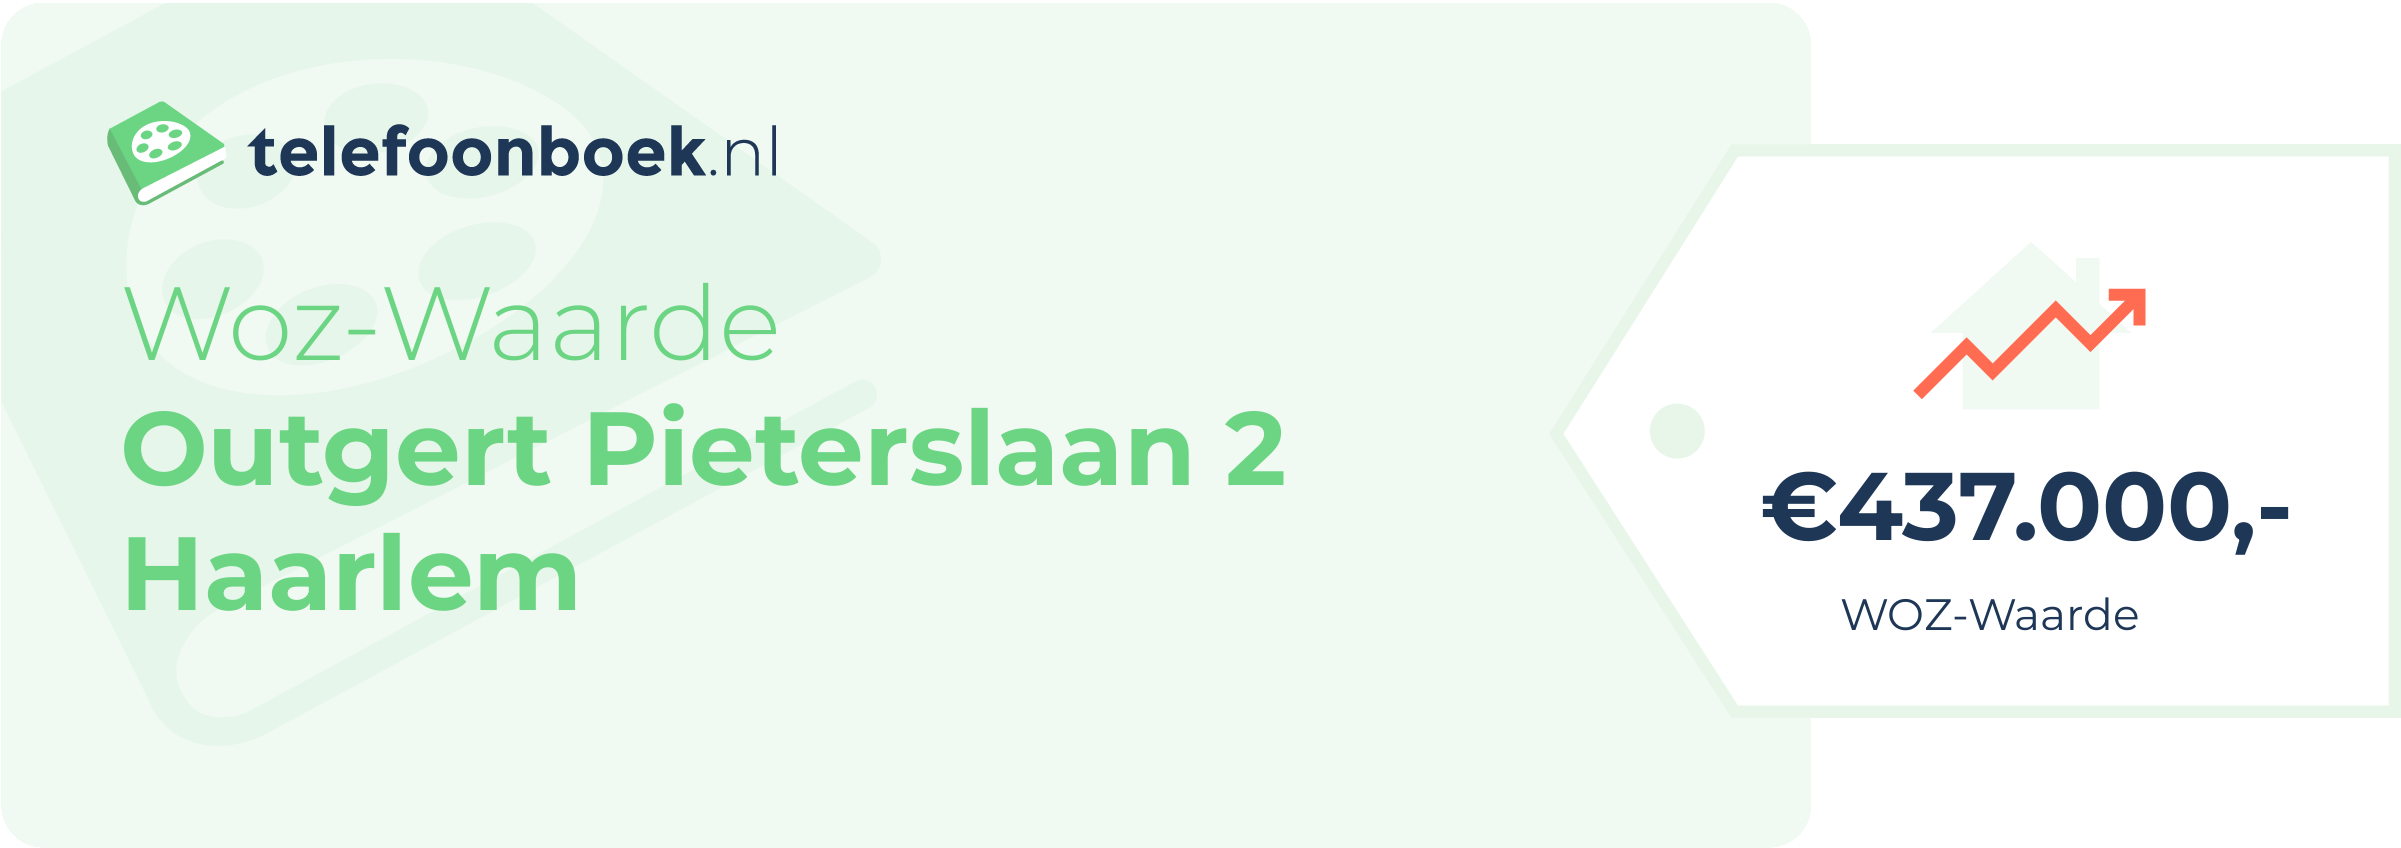 WOZ-waarde Outgert Pieterslaan 2 Haarlem